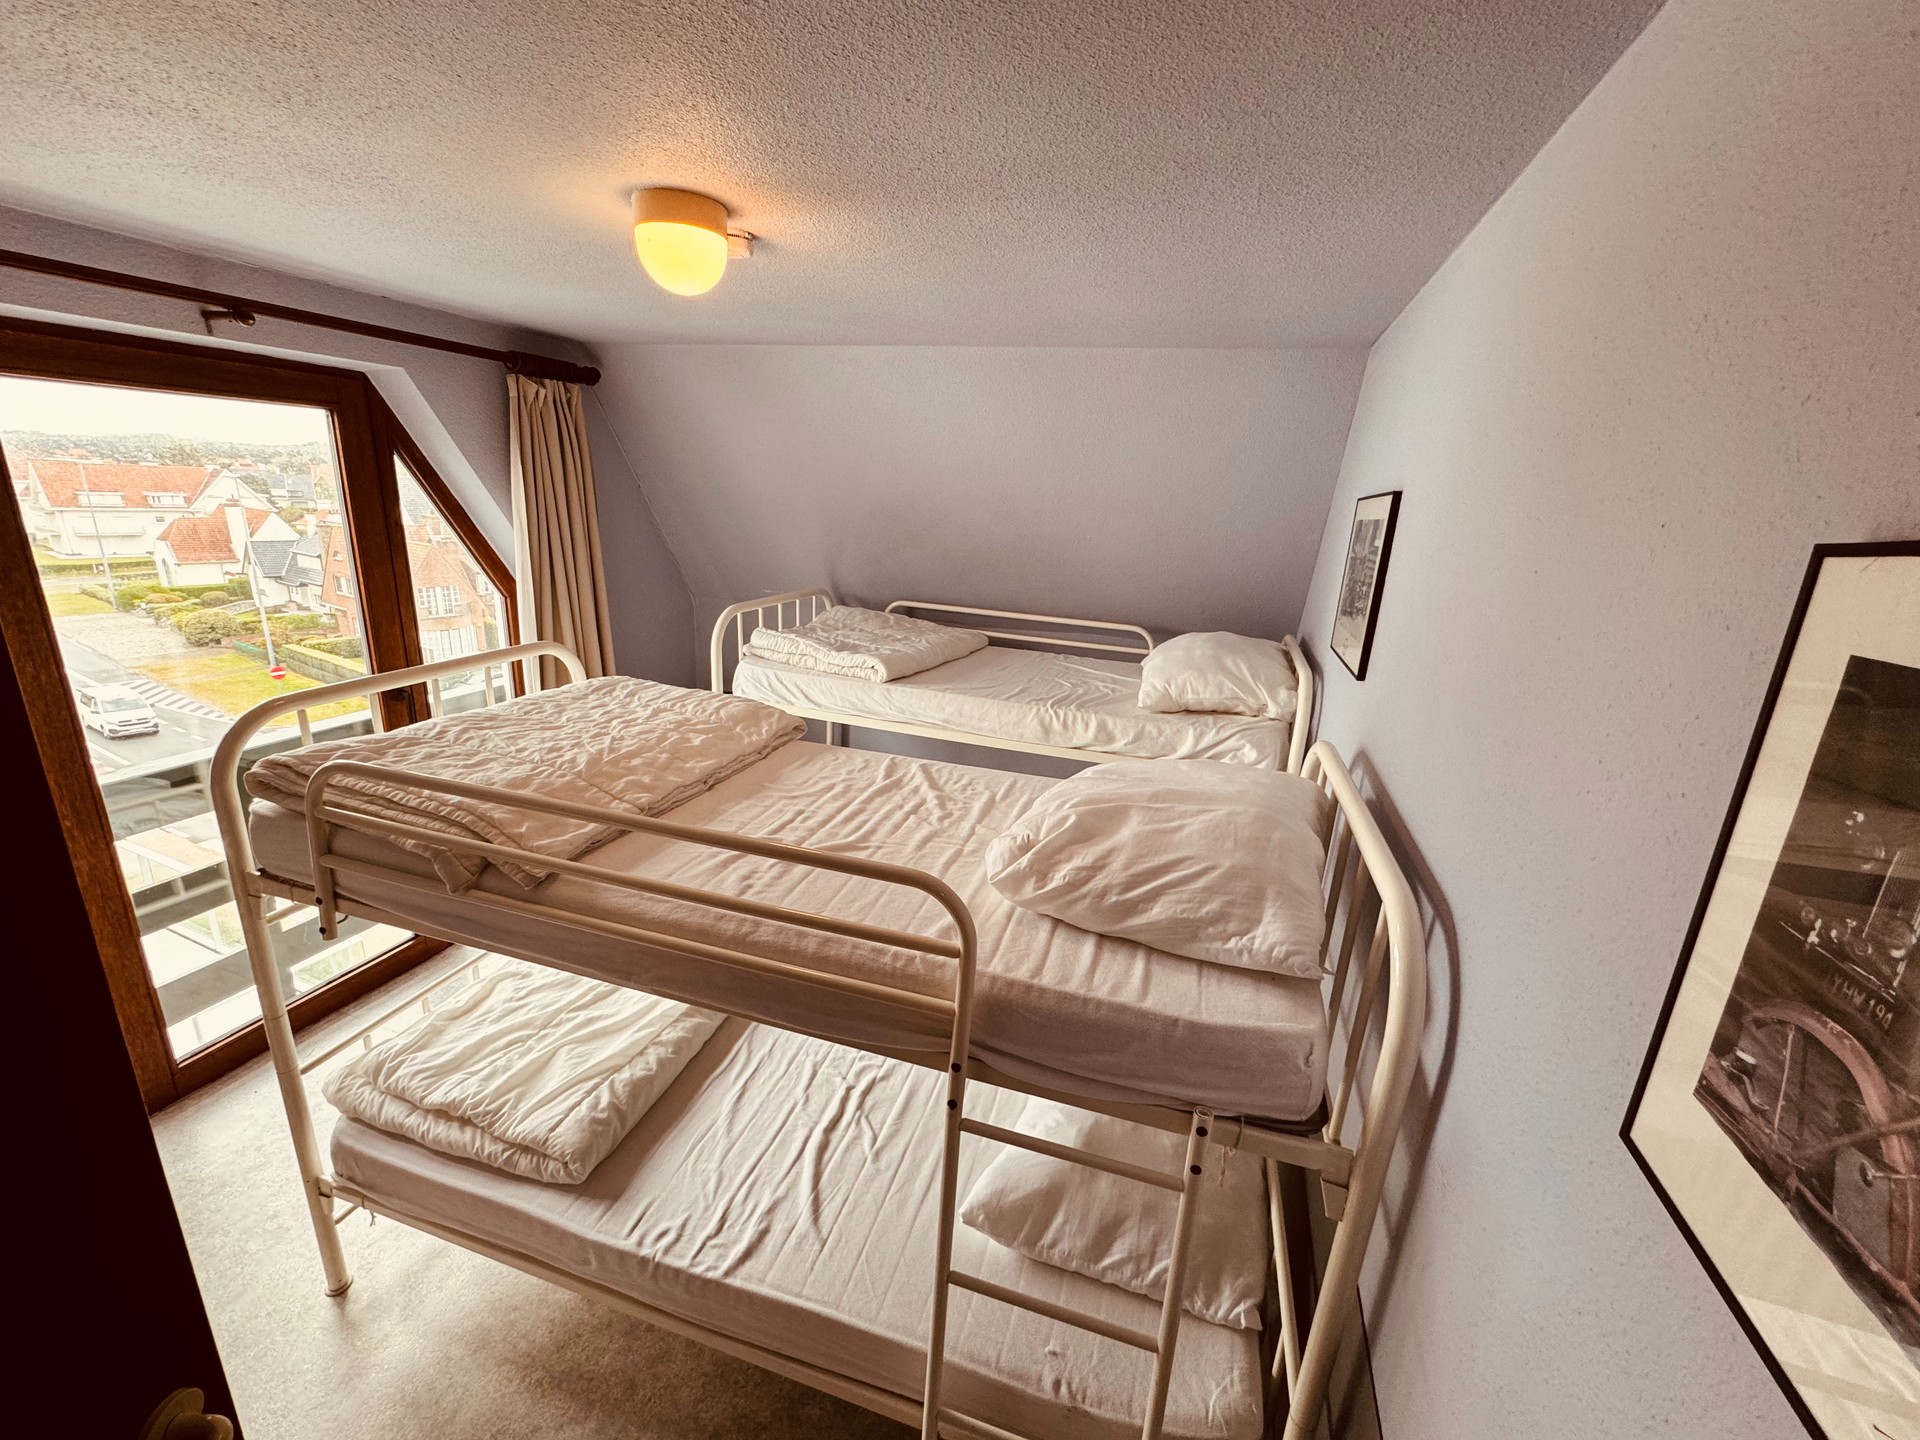 Appartement met twee slaapkamers in de concessie van De Haan. foto 10